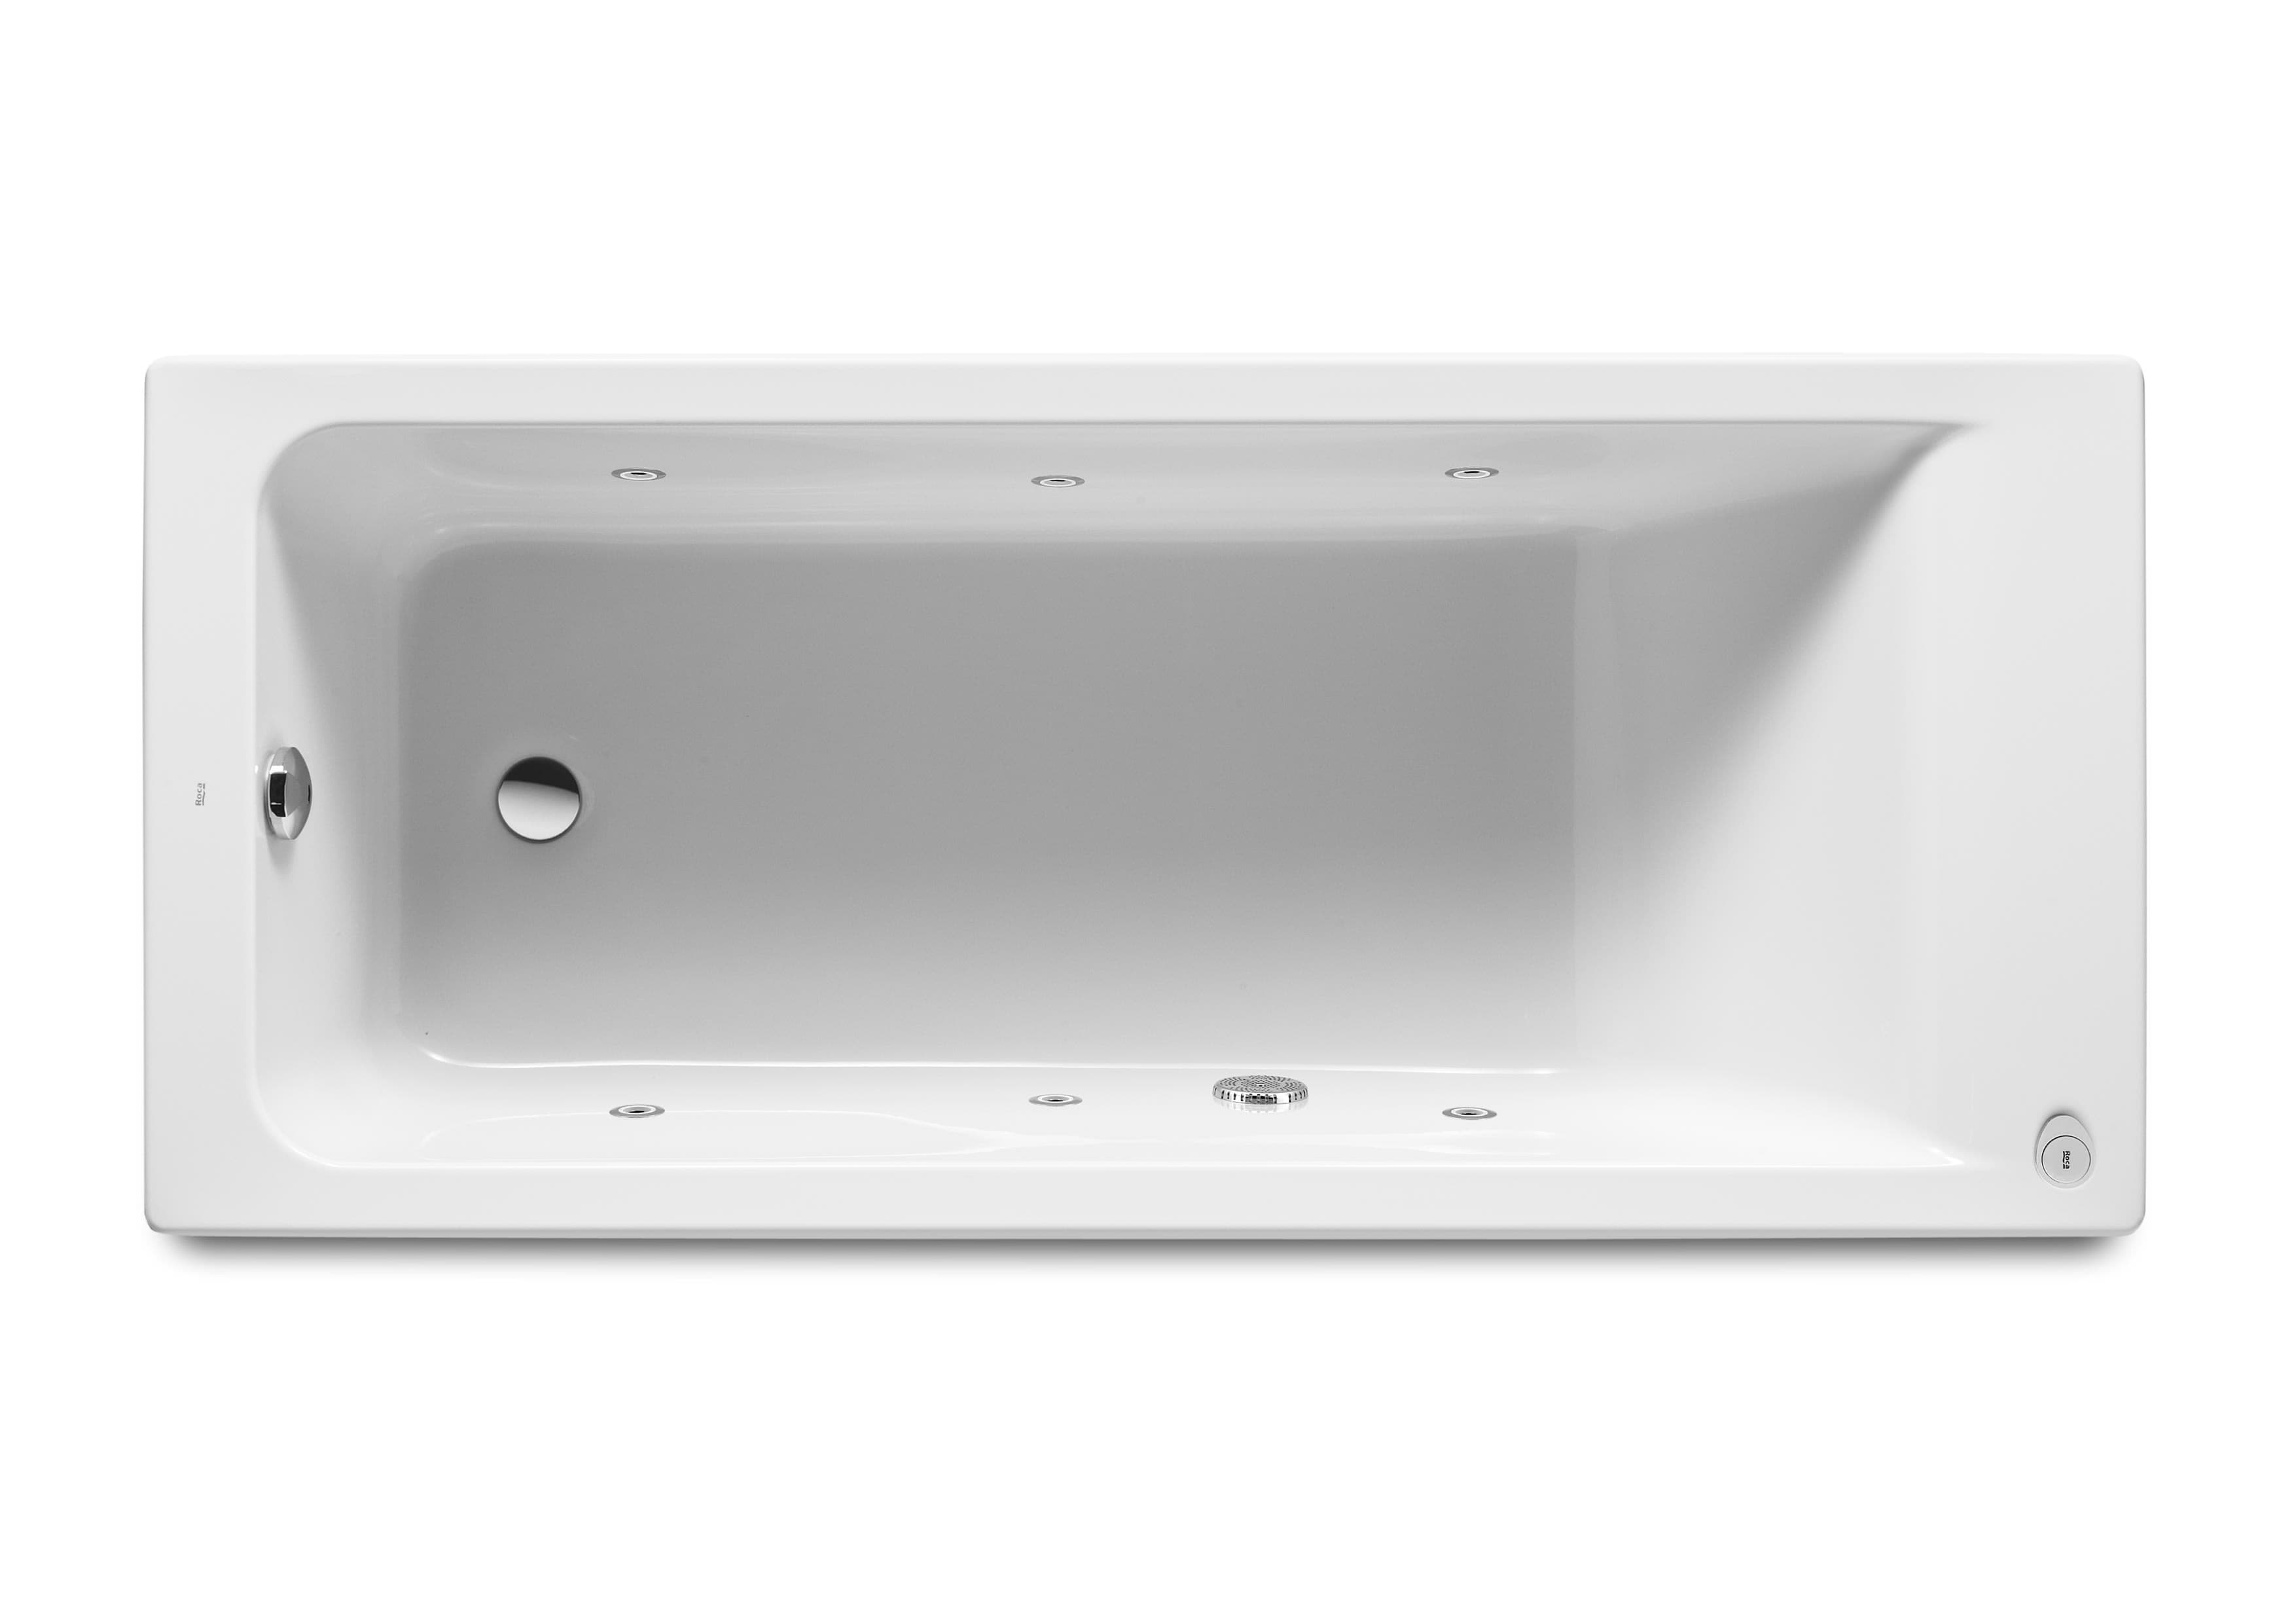 Sanitaire Baignoires EASY A248155001 Baignoire acrylique rectangulaire avec système de balnéo Tonic livrée avec pieds réglables Roca 1 - Mirage ceramica